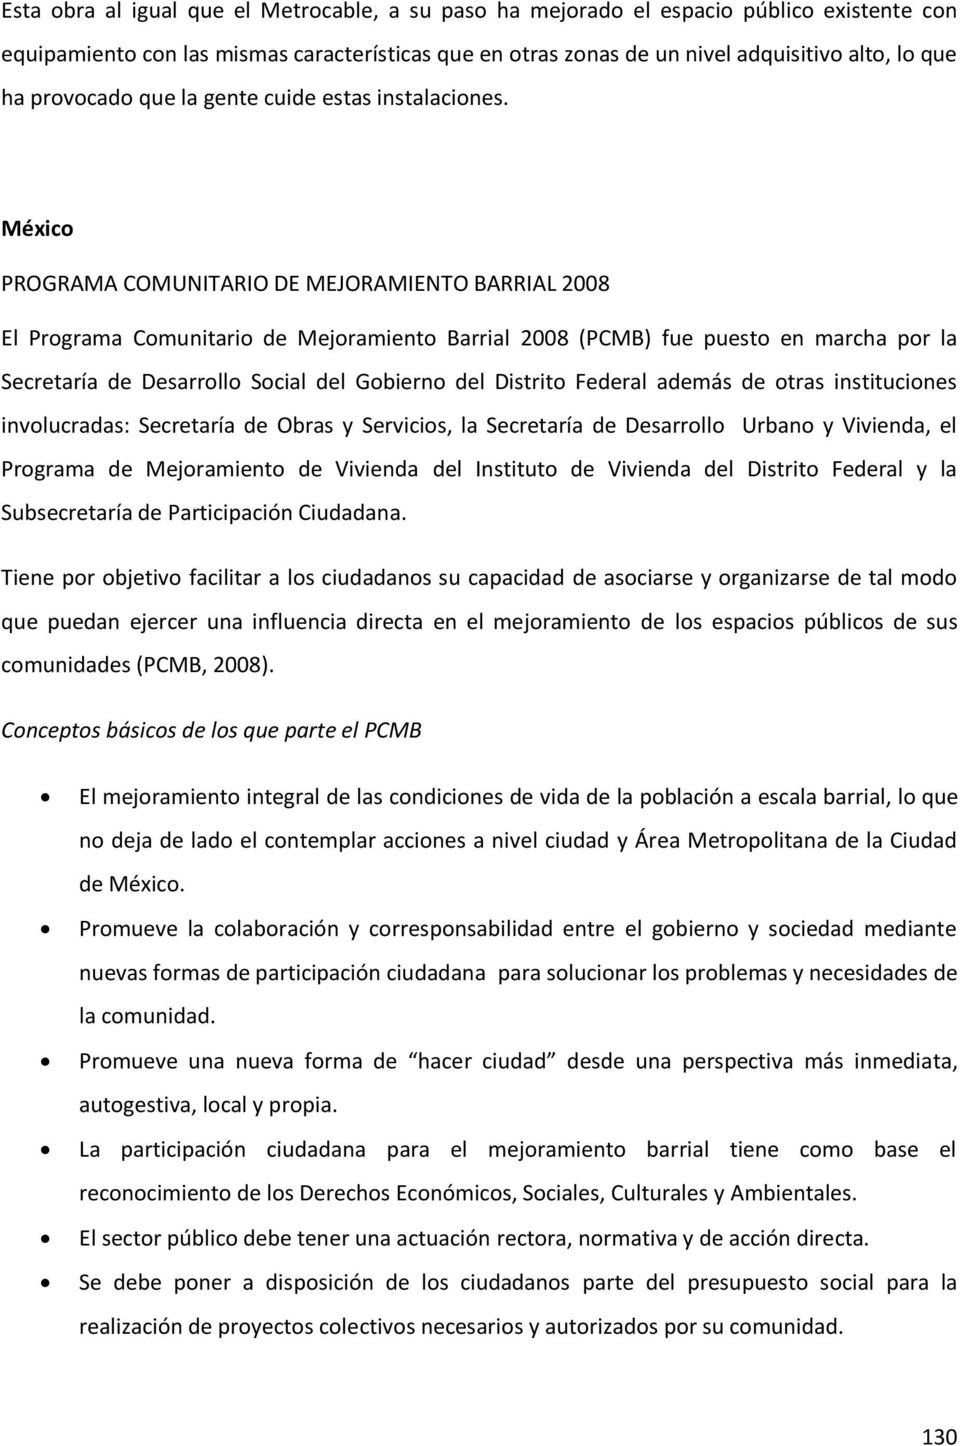 México PROGRAMA COMUNITARIO DE MEJORAMIENTO BARRIAL 2008 El Programa Comunitario de Mejoramiento Barrial 2008 (PCMB) fue puesto en marcha por la Secretaría de Desarrollo Social del Gobierno del